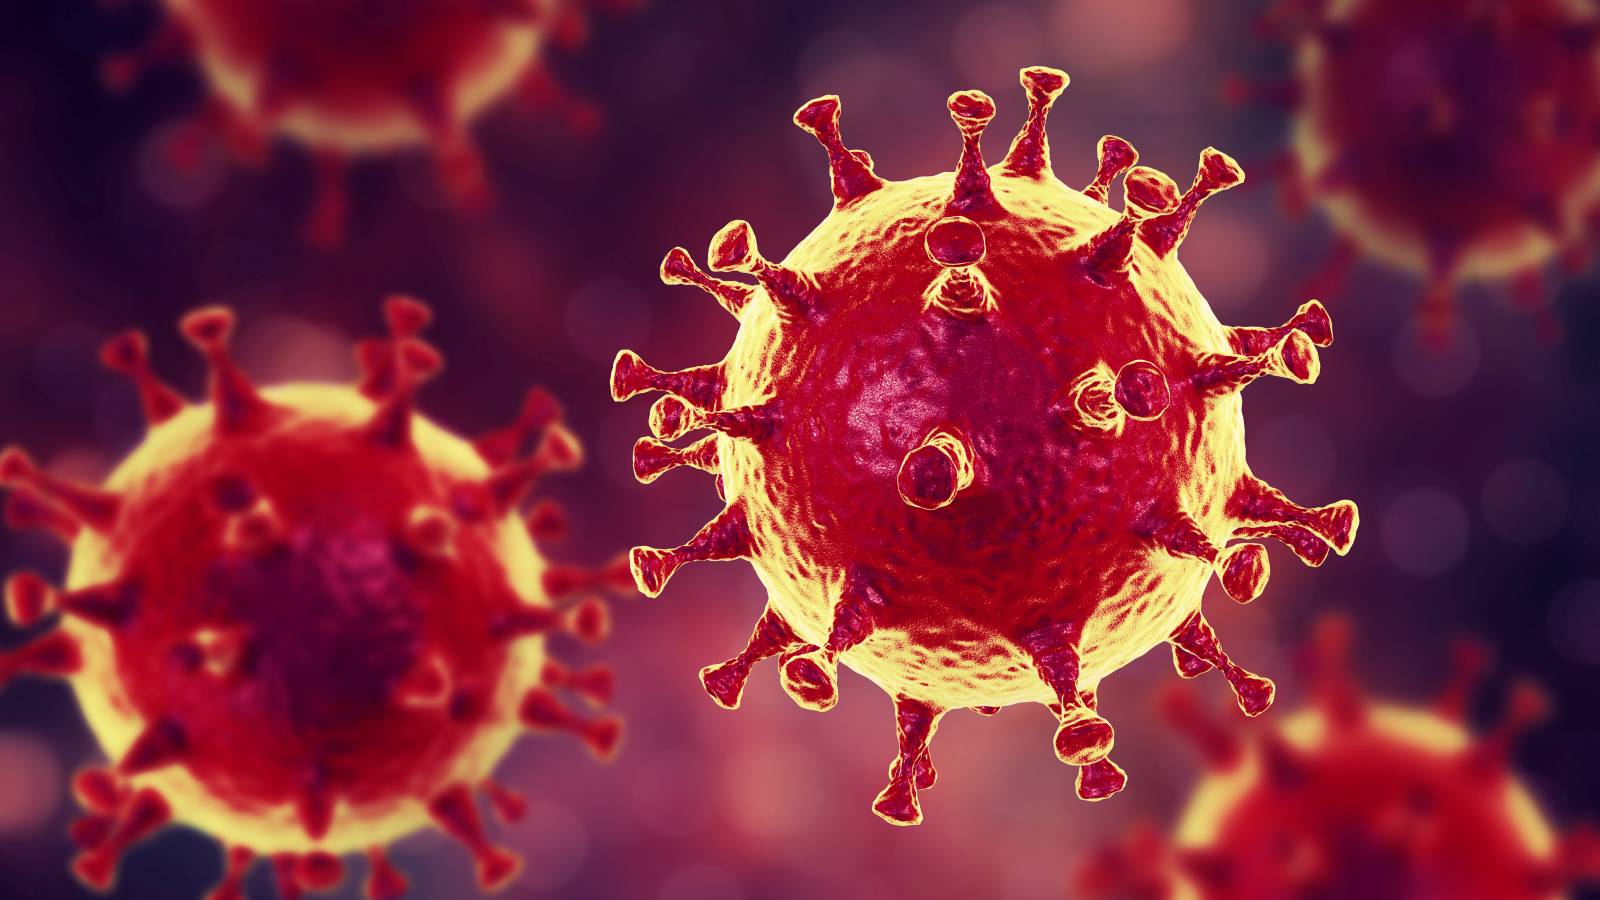 Koronavirus Romaniassa suuri määrä tapauksia 10. huhtikuuta